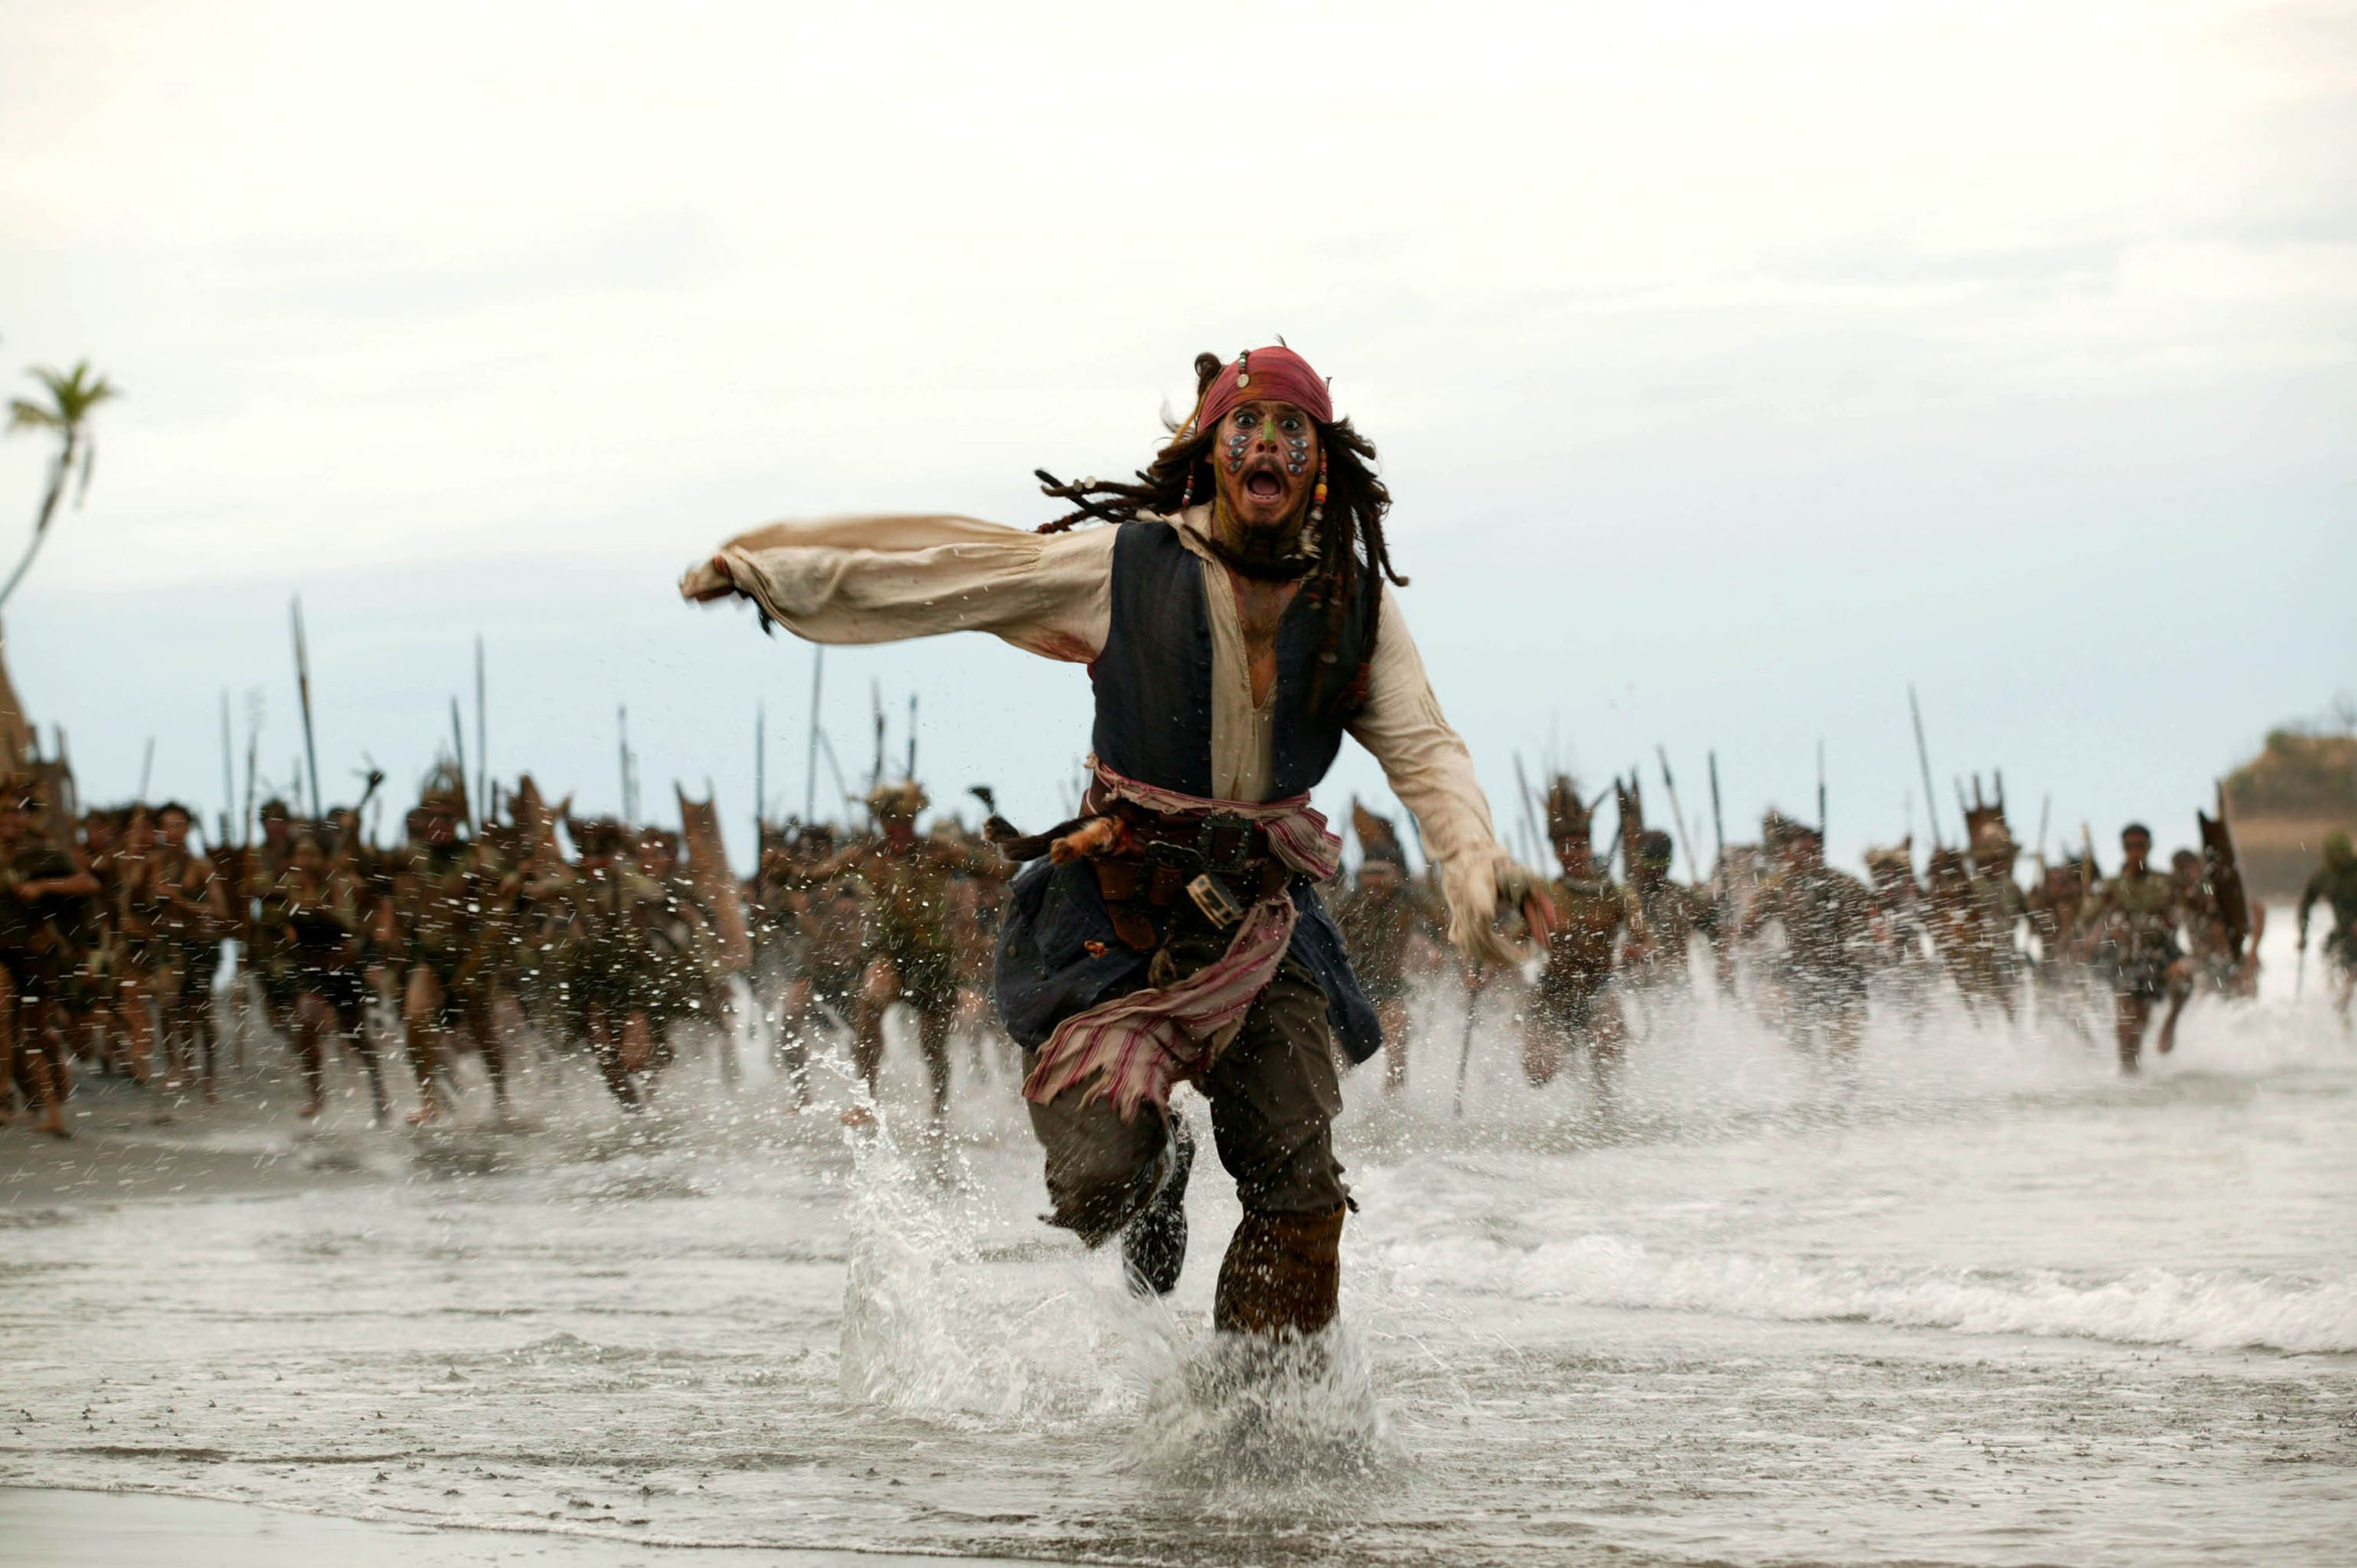 Jack Sparrow 高 清 壁 纸, 桌 面 背 景. 约 翰 尼-德 普 高 清 壁 纸, 桌 面 背 景. 电 影 加 勒 比 海 盗 2....